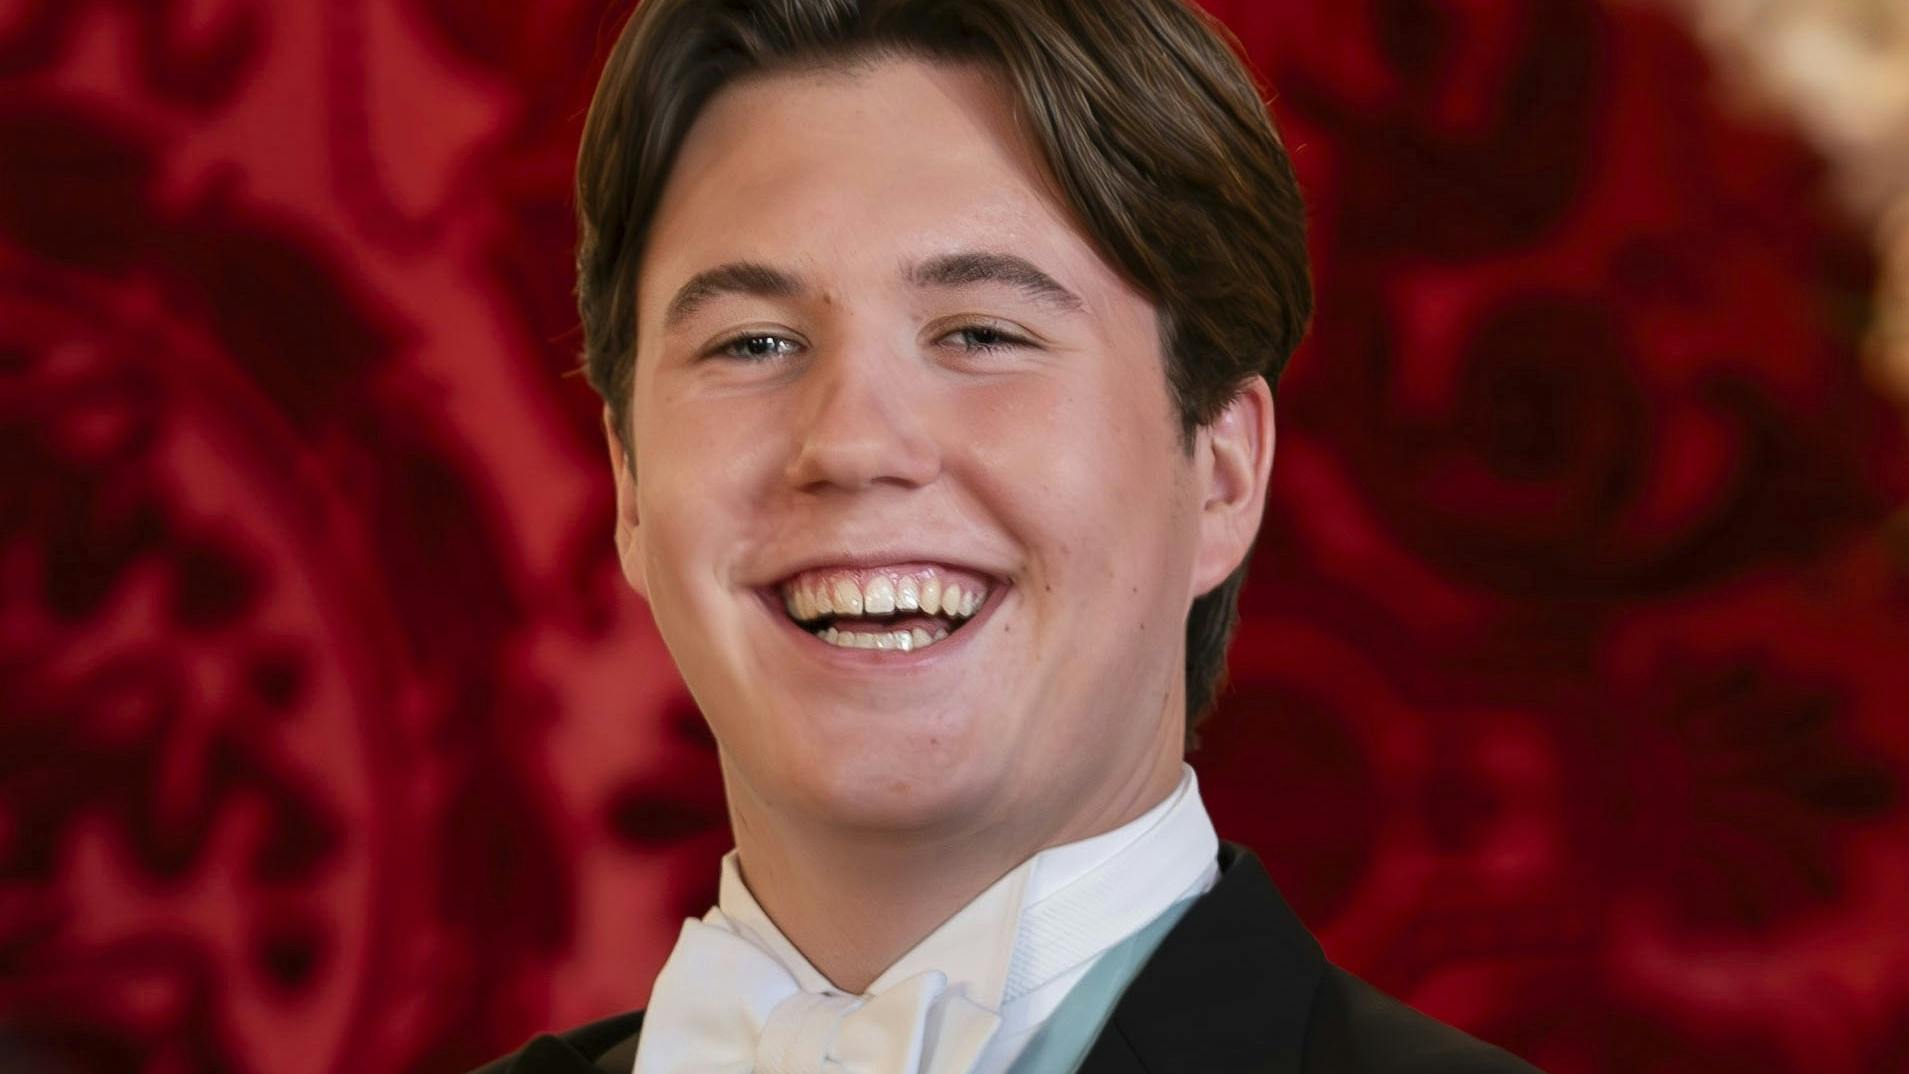 De officielle portrætter af prins Christian i forbindelse med søndagens 18-års fødselsdag er nu blevet offentliggjort af kongehuset.